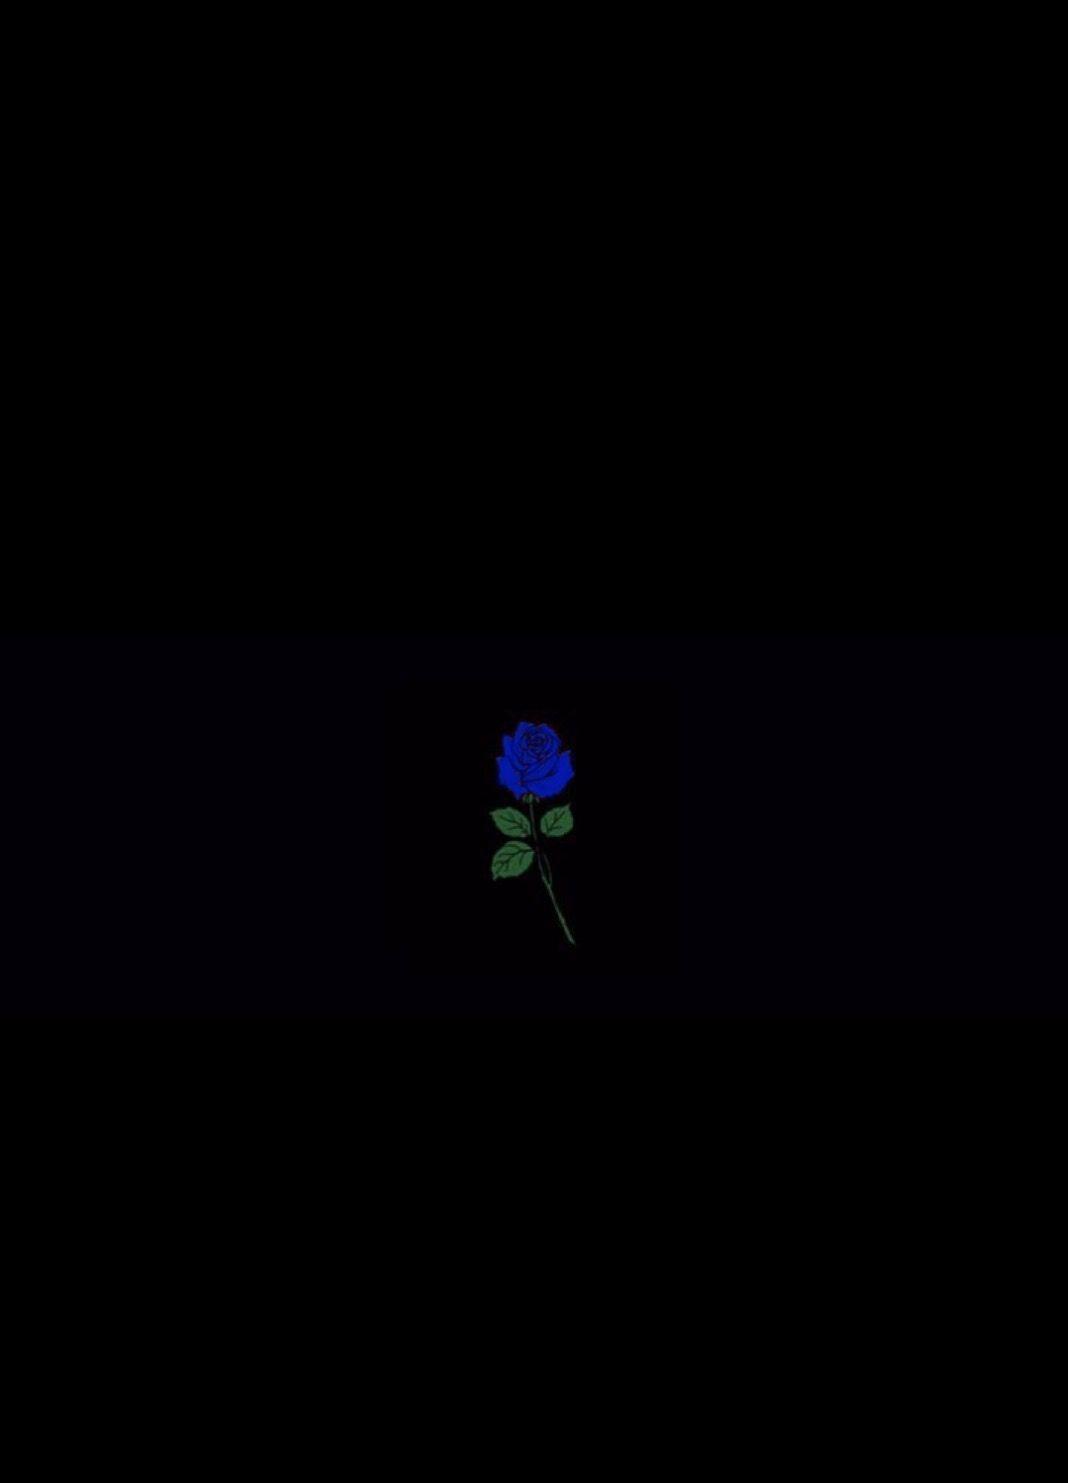 A blue rose in the dark - Dark blue